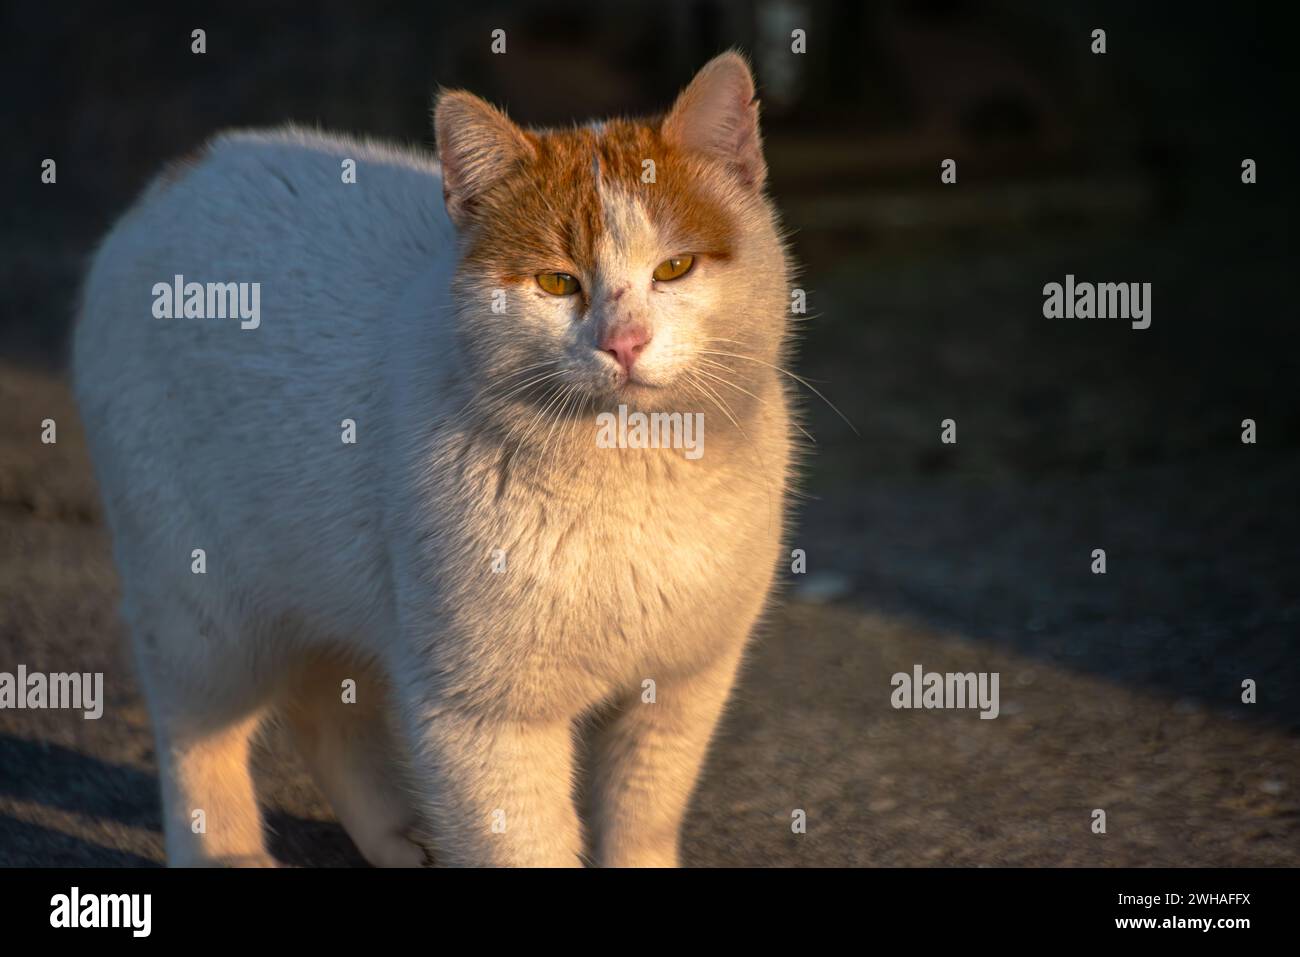 Eine streunende Katze, die mit einem besinnlichen Blick weit weg blickt, Einsamkeit und einen nachdenklichen Moment inmitten der städtischen Landschaft ausdrückt Stockfoto